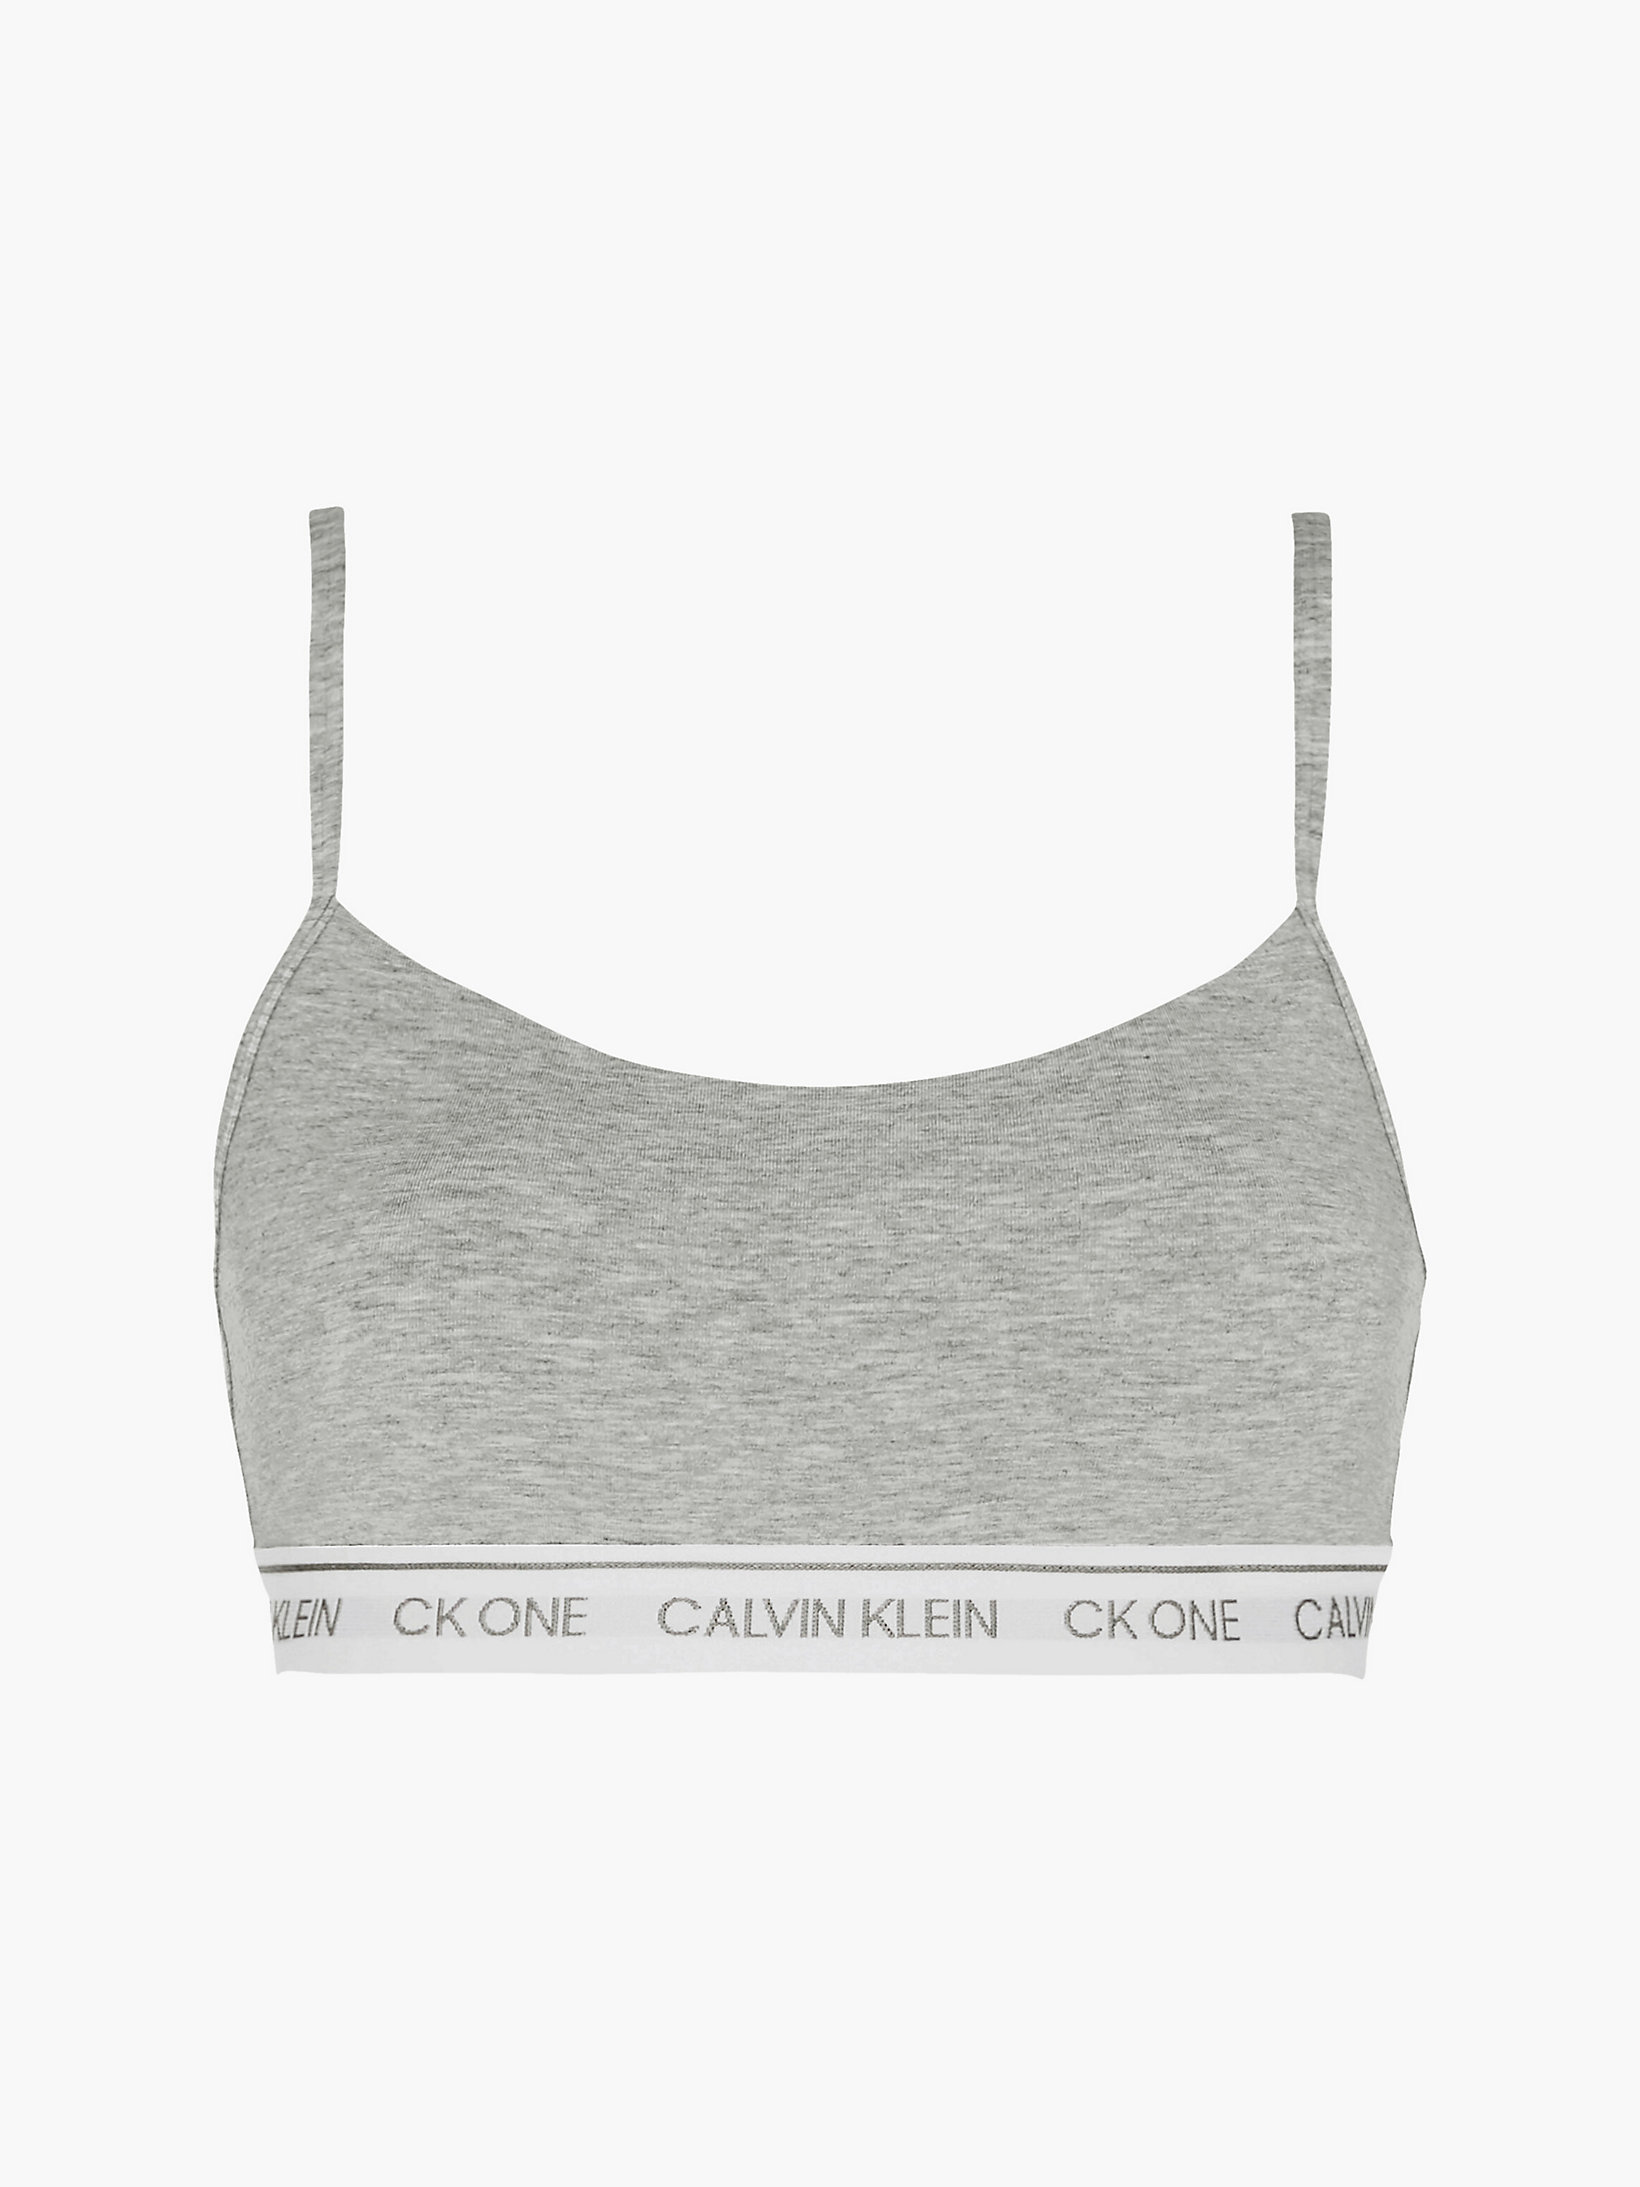 Grey Heather String Bralette - CK One undefined women Calvin Klein